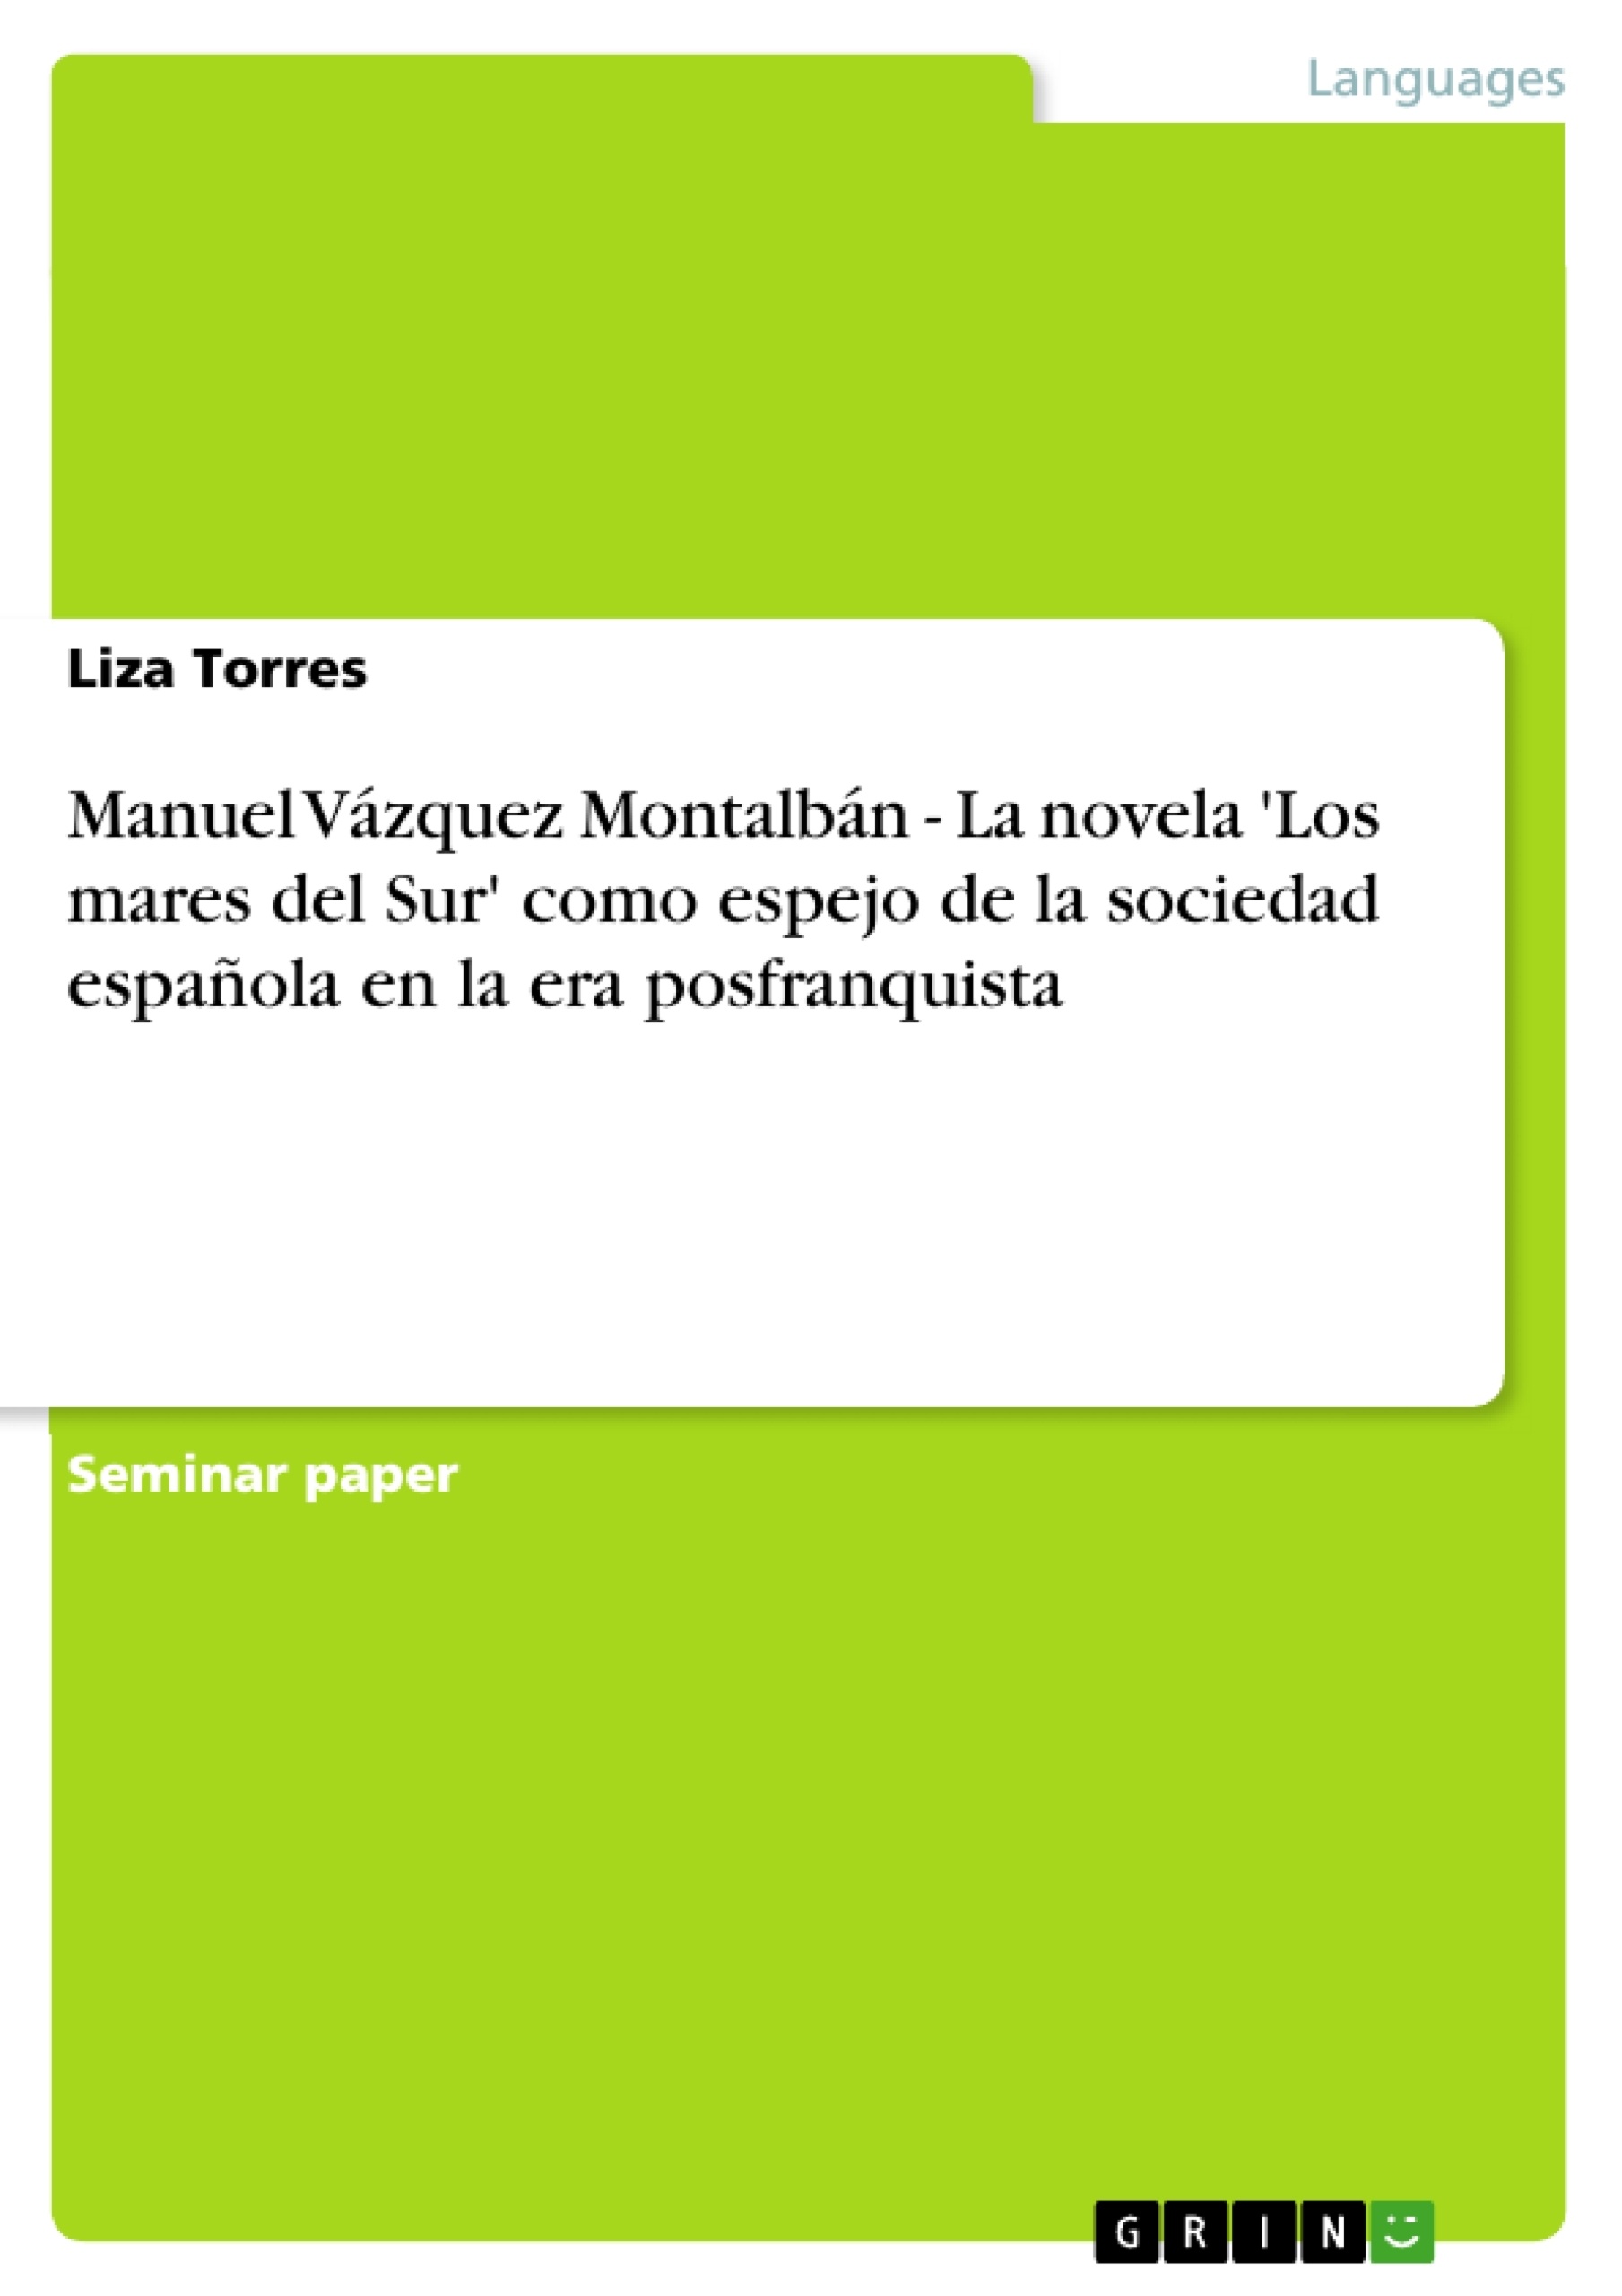 Título: Manuel Vázquez Montalbán - La novela 'Los mares del Sur' como espejo de la sociedad española en la era posfranquista